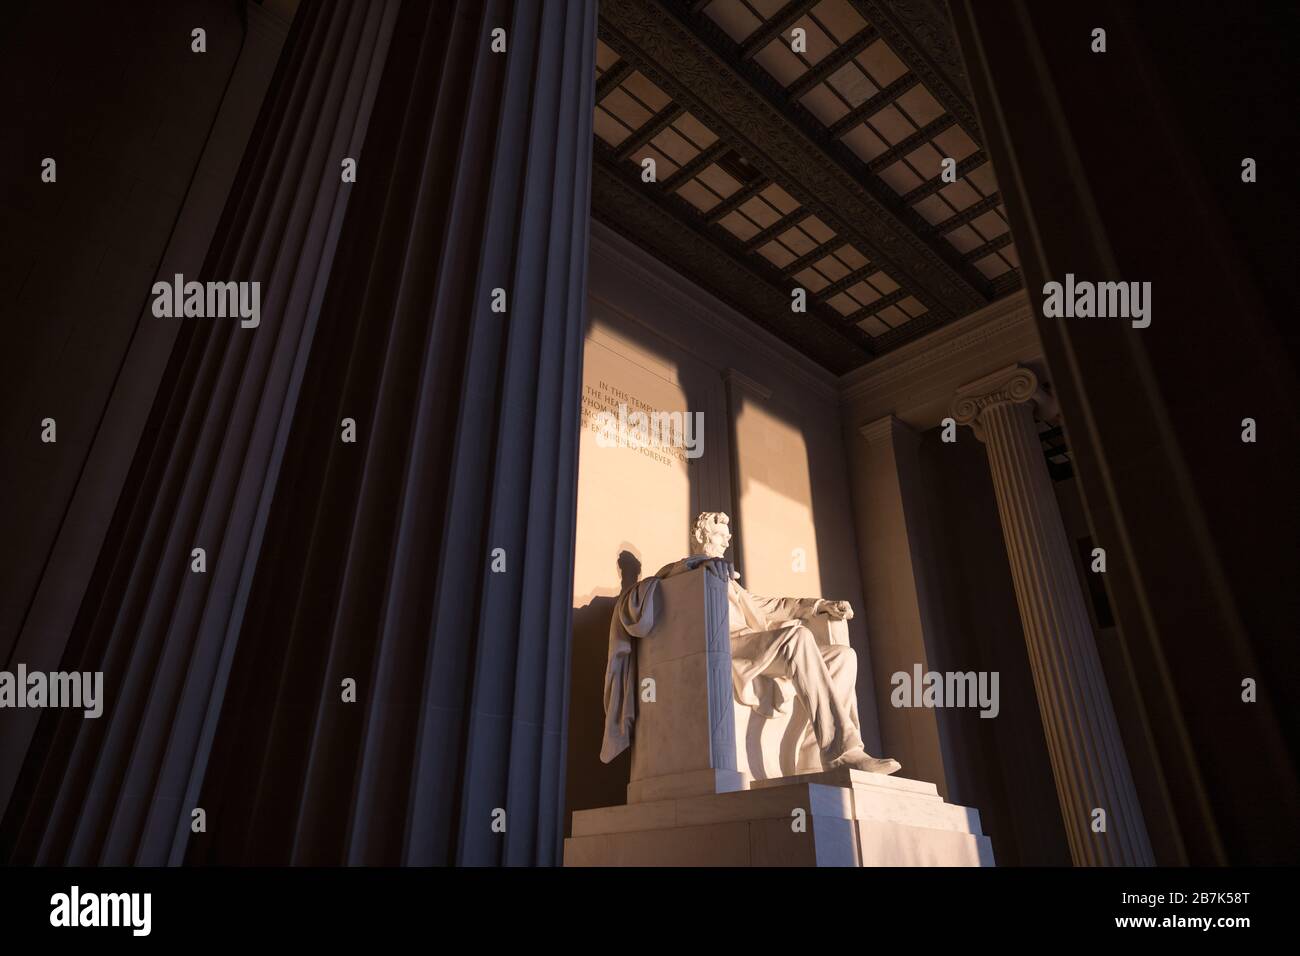 WASHINGTON DC, USA - Die große Statue in der Kammer des Lincoln Memorial Fang am frühen Morgen, goldenes Sonnenlicht bei Sonnenaufgang im Herbst (Herbst) Equinox. Das Lincoln Memorial liegt am westlichen Ende der reflektierenden Pool und Gesichter direkt im Osten. Die Statue ist tief in der Kammer und ist in der Regel weit außerhalb der Reichweite der direkten Sonneneinstrahlung. Stockfoto